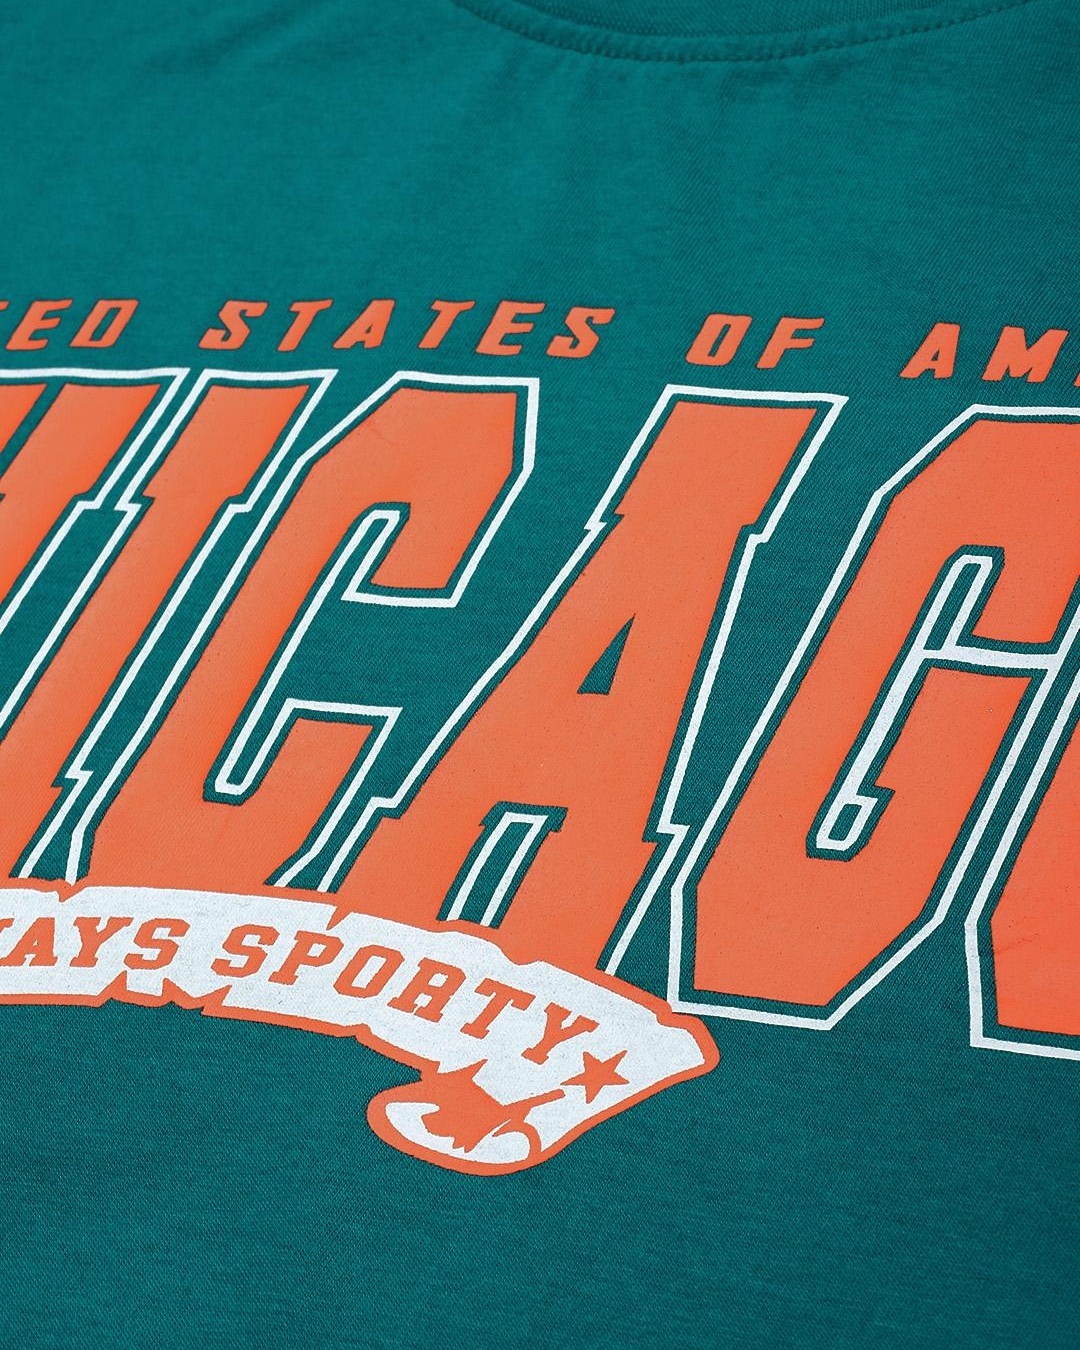 Buy Men's Green Chicago Typography Oversized T-shirt Online at Bewakoof